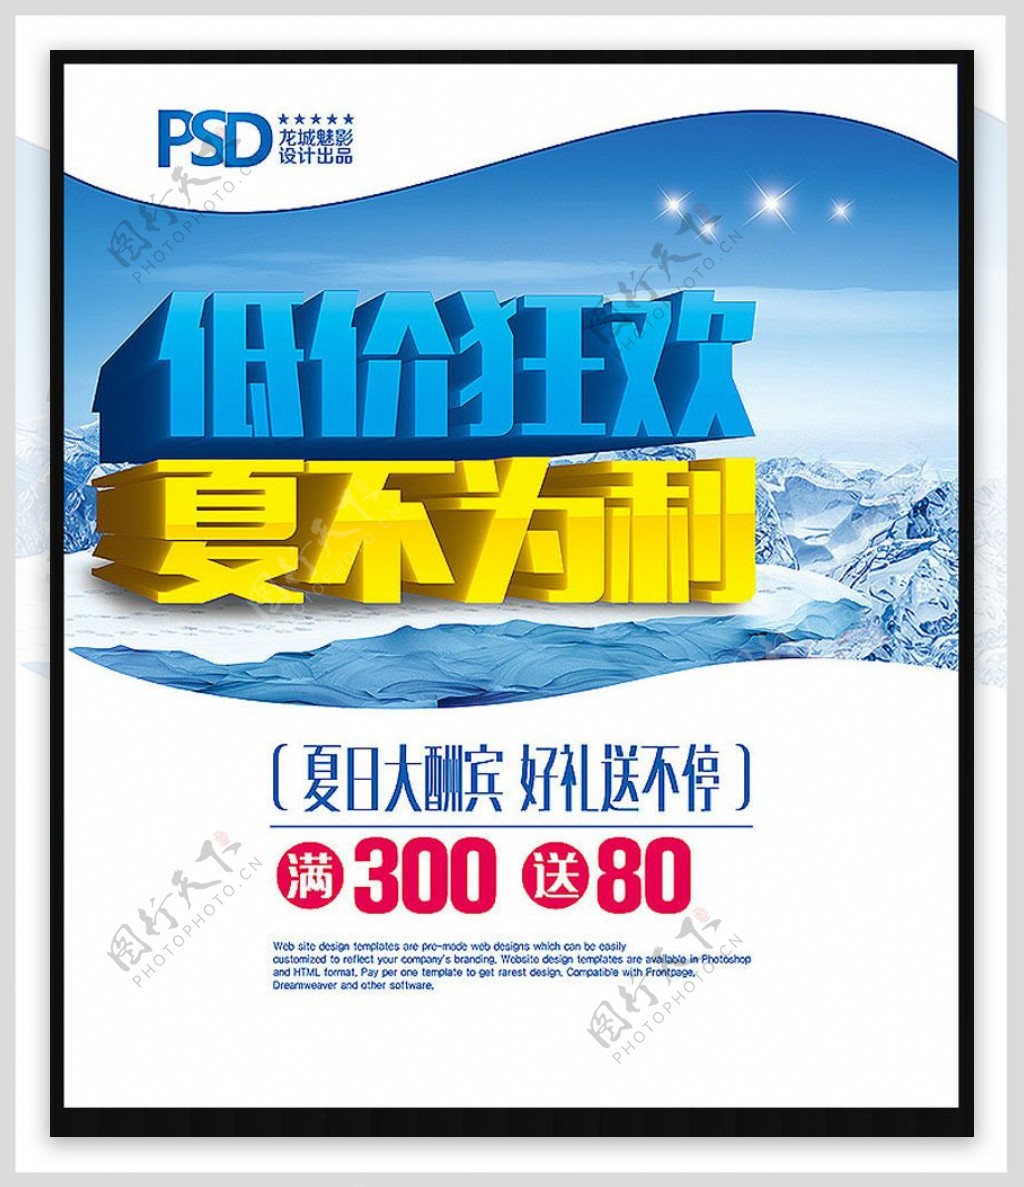 低价狂欢夏季促销海报设计PSD素材